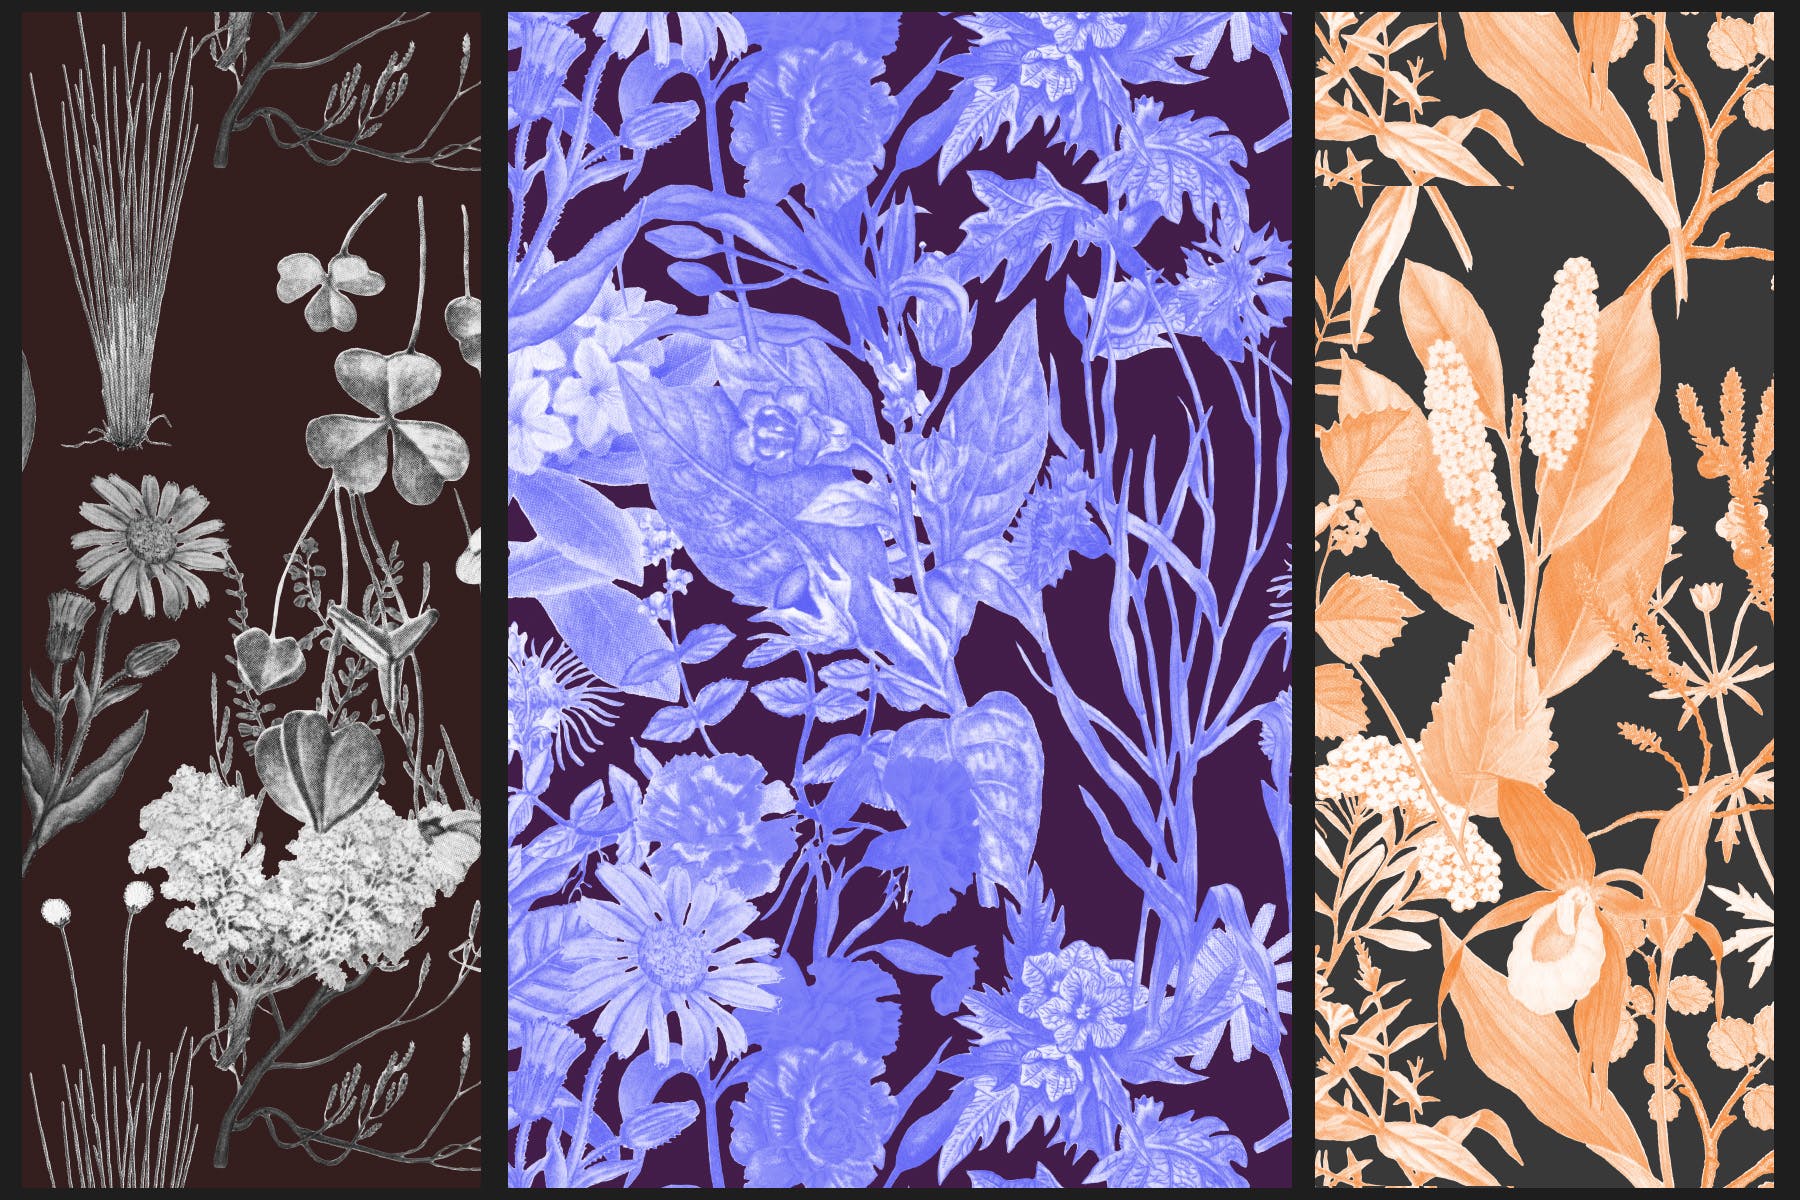 高清复古植物图案背景设计素材 Vintage Botanical Patterns插图(1)